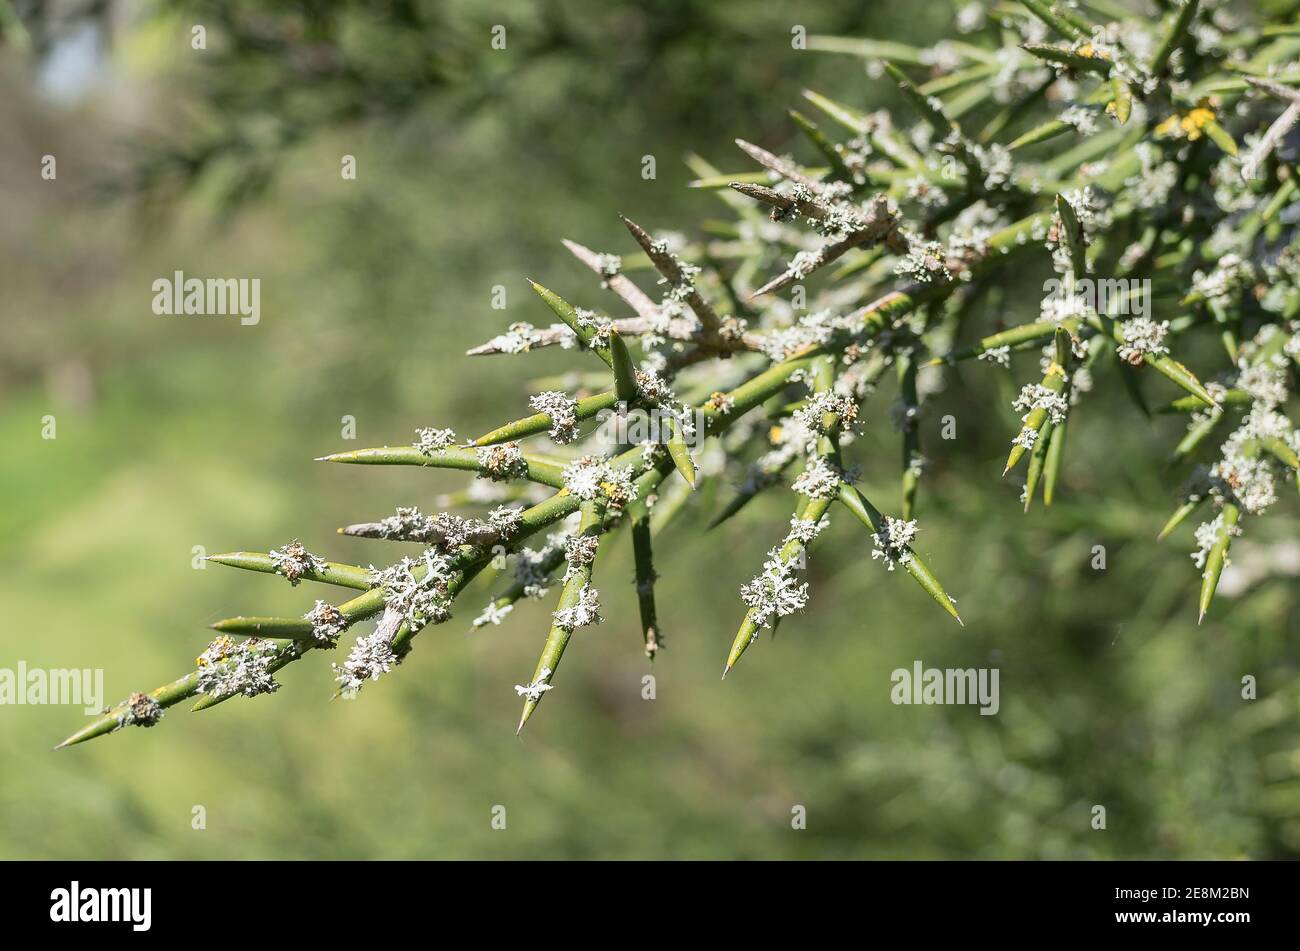 Arbuste épineux insolite Colletia Hysterix Rosea montrant des épines cylindriques en lon Couvert de lichens indiquant la pureté de l'air dans un jardin anglais Banque D'Images